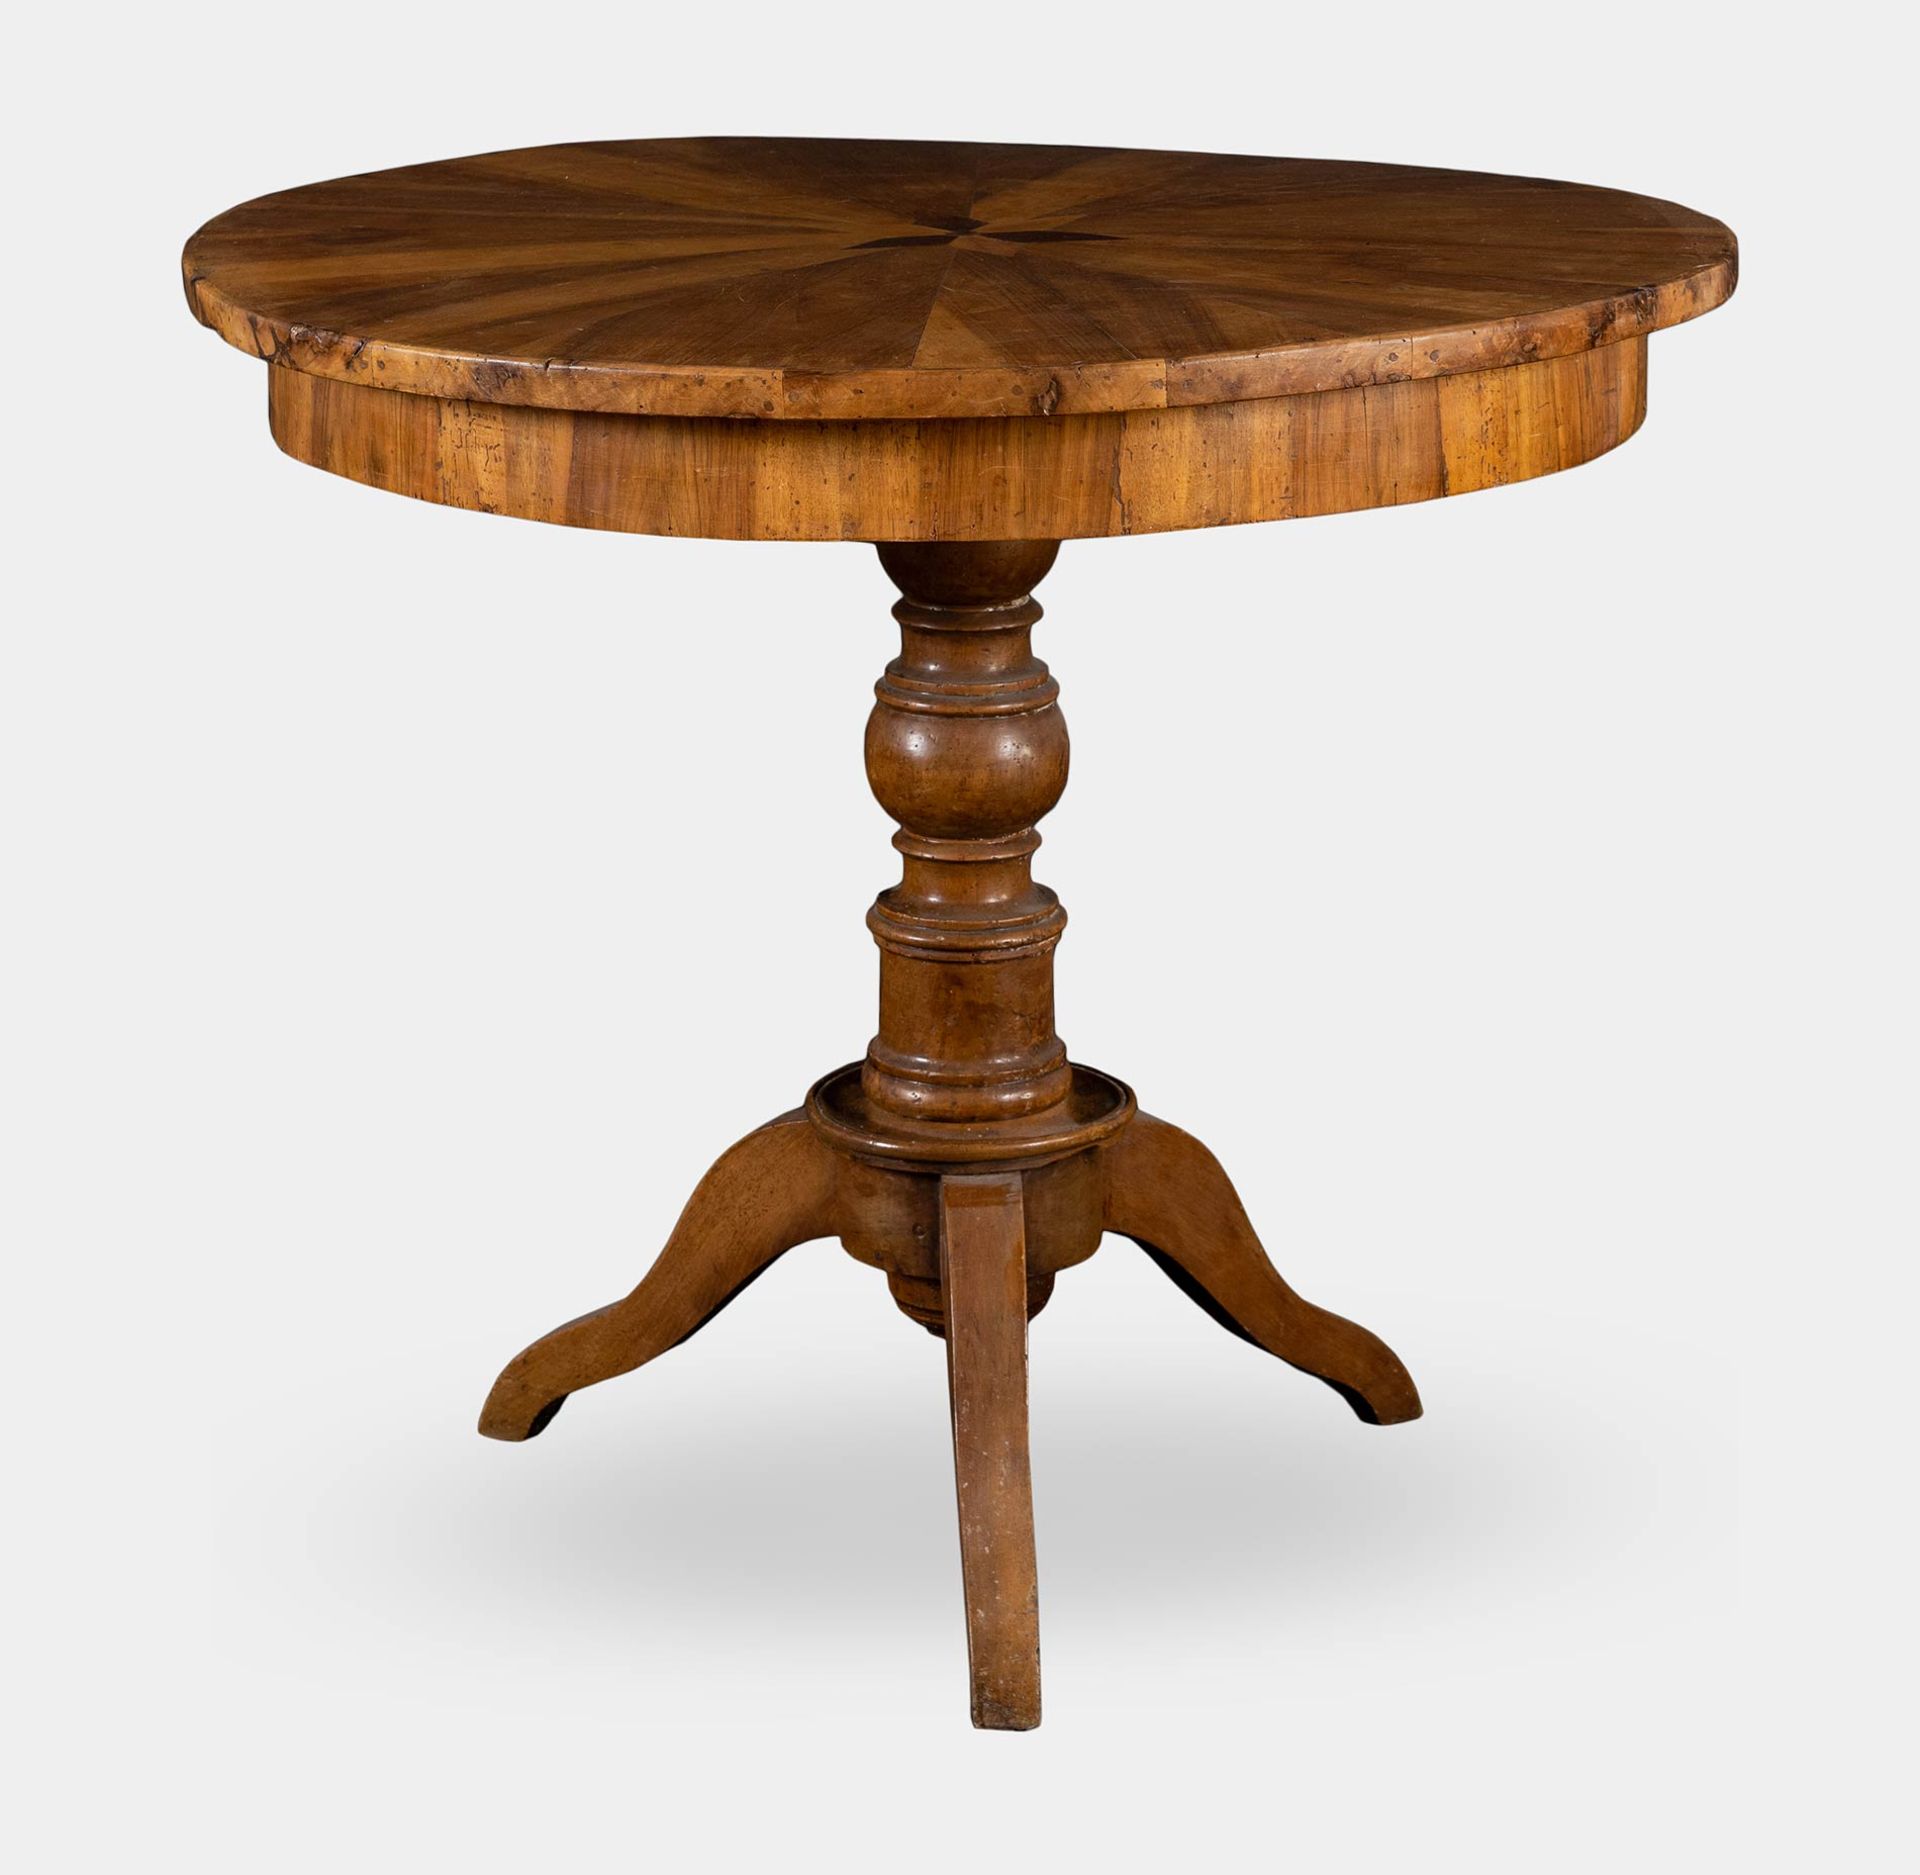 Tavolo circolare lastronato in legno di noce, XIX sec.